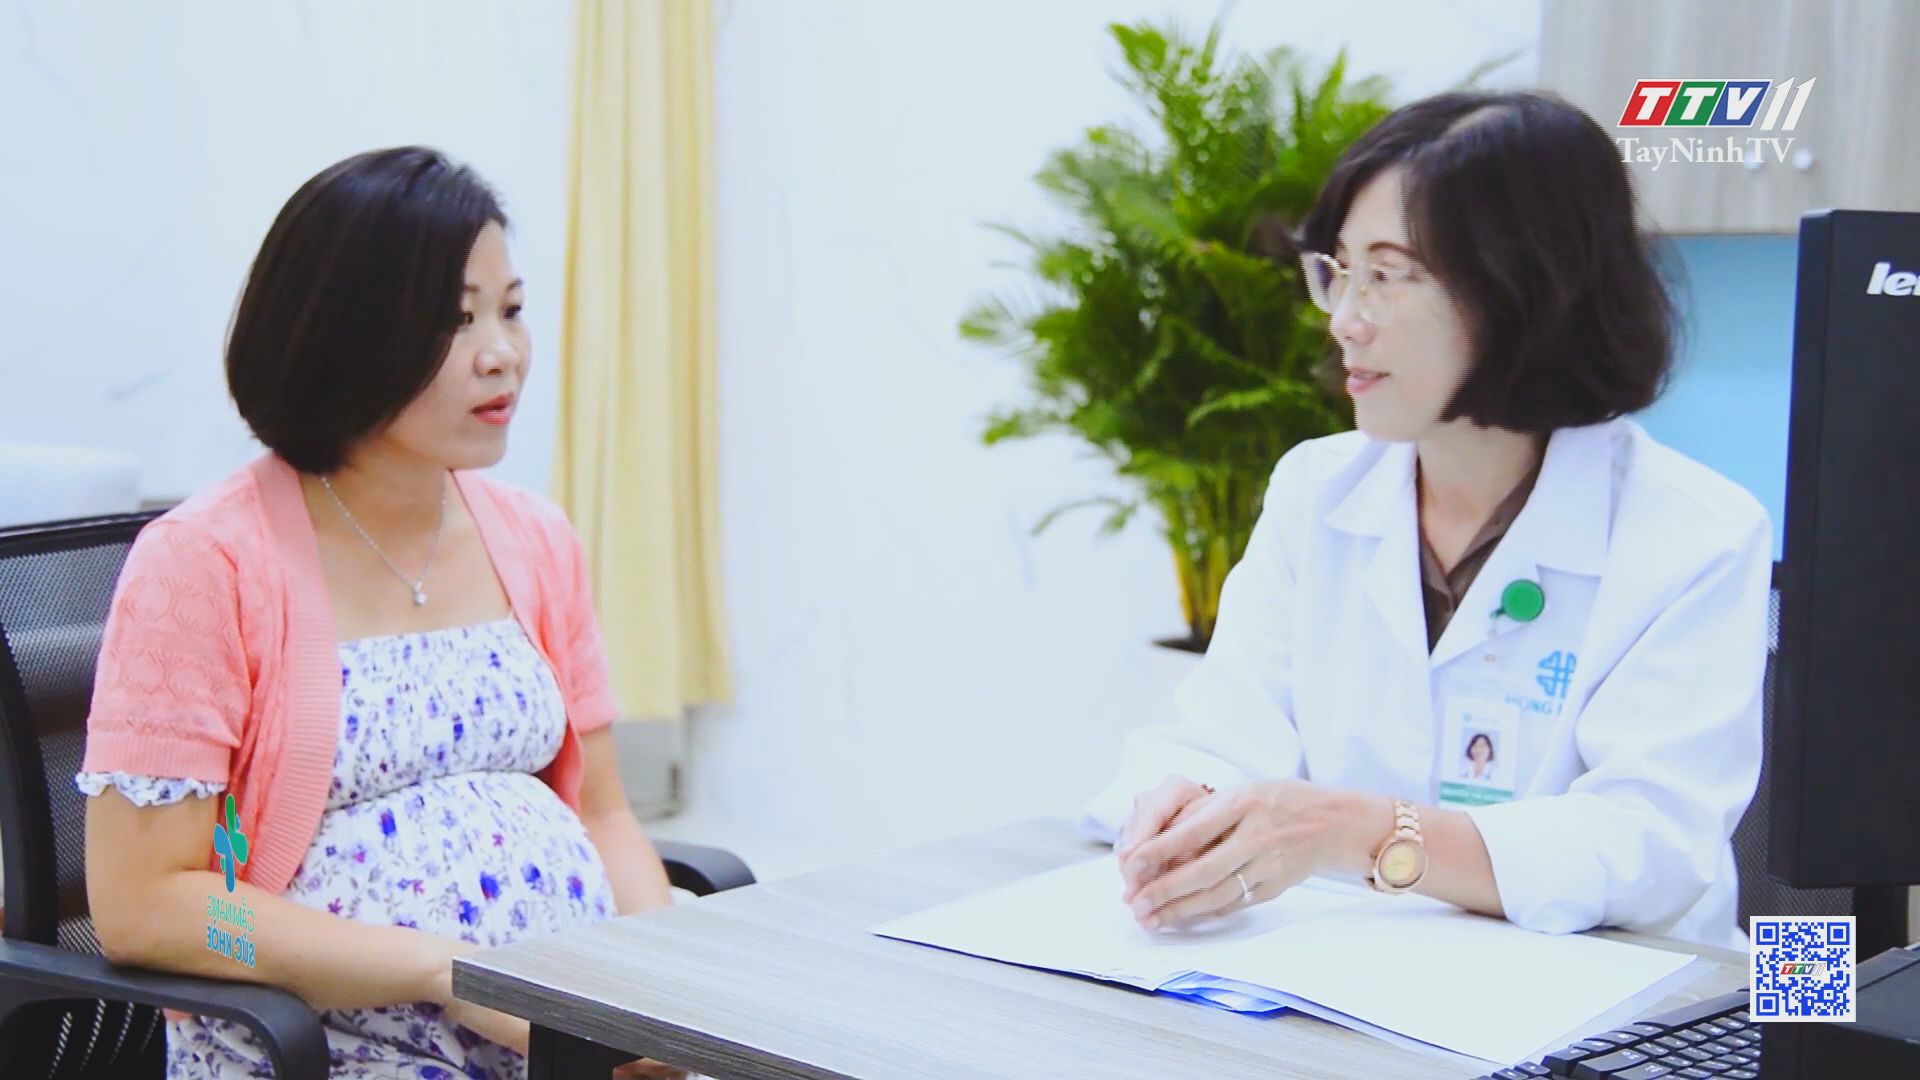 Chăm sóc thai kỳ và kỹ năng vượt cạn an toàn | Cẩm nang sức khỏe | TayNinhTV